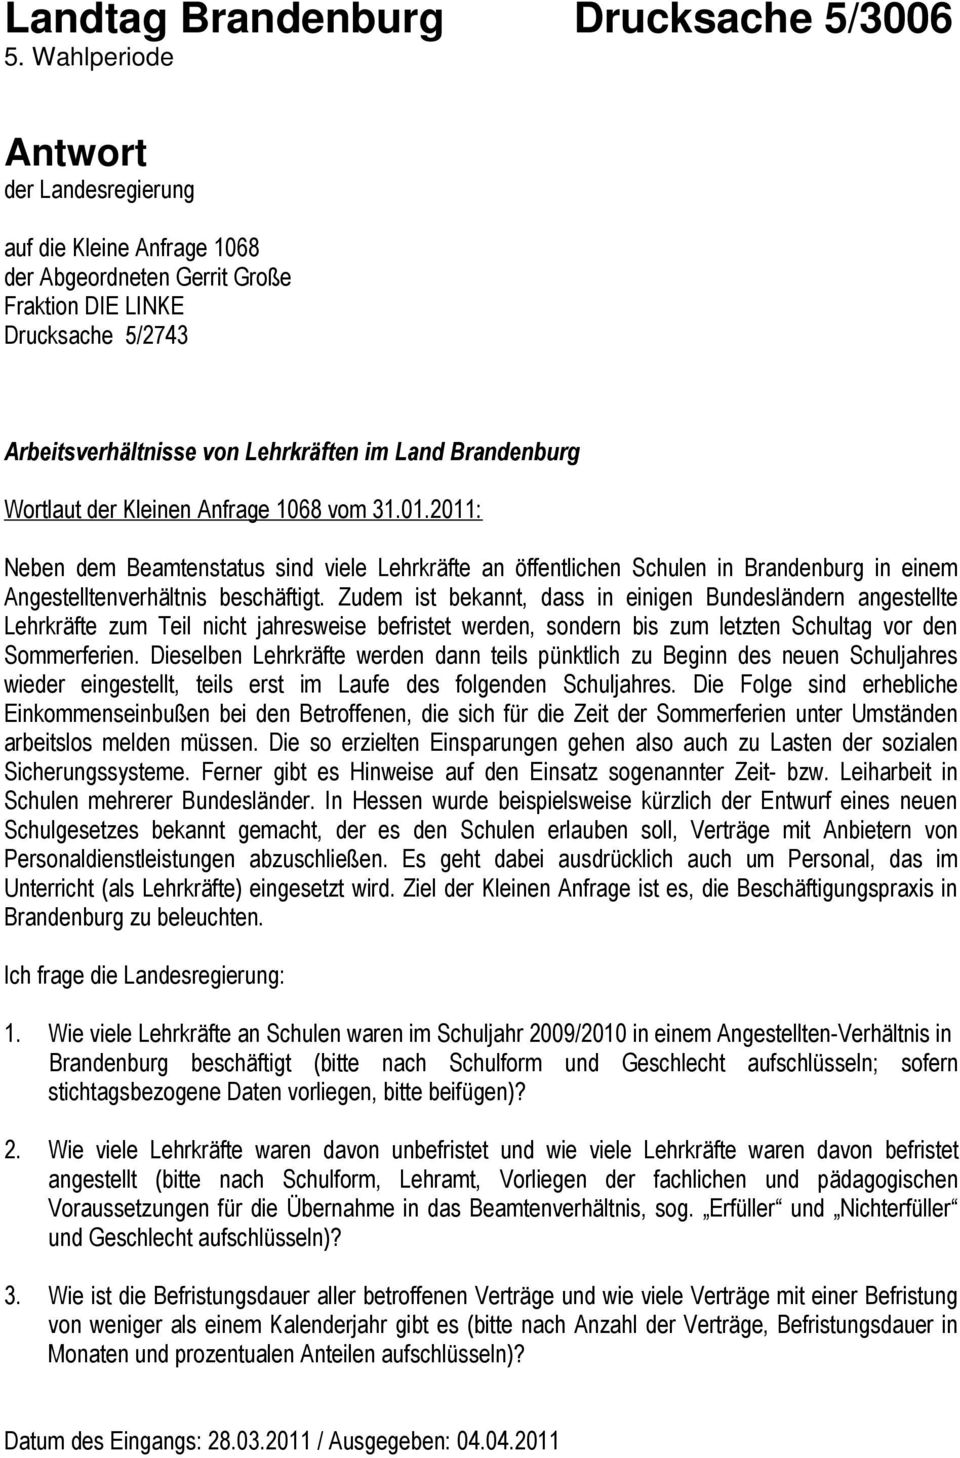 der Kleinen Anfrage 1068 vom 31.01.2011: Neben dem Beamtenstatus sind viele Lehrkräfte an öffentlichen Schulen in Brandenburg in einem Angestelltenverhältnis beschäftigt.